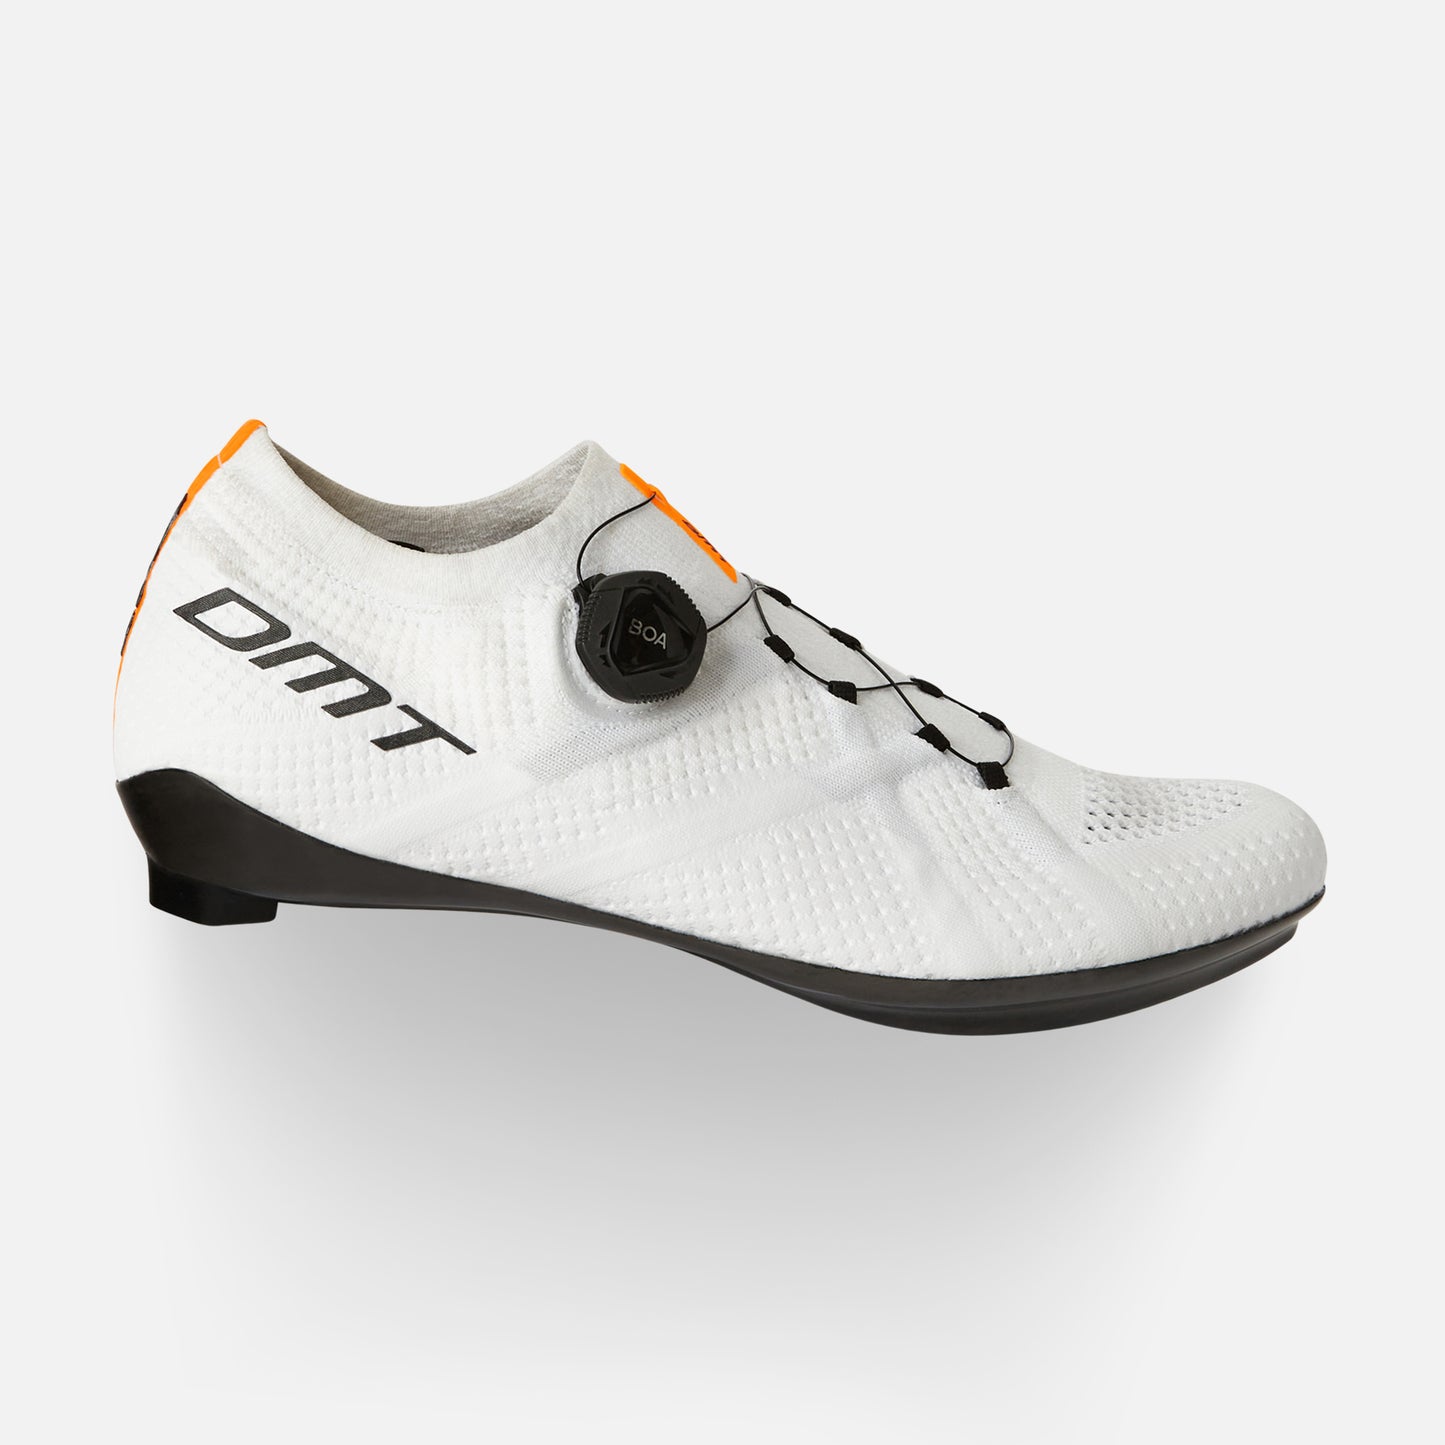 DMT Kr1 bike shoes White/White - DMT Cycling